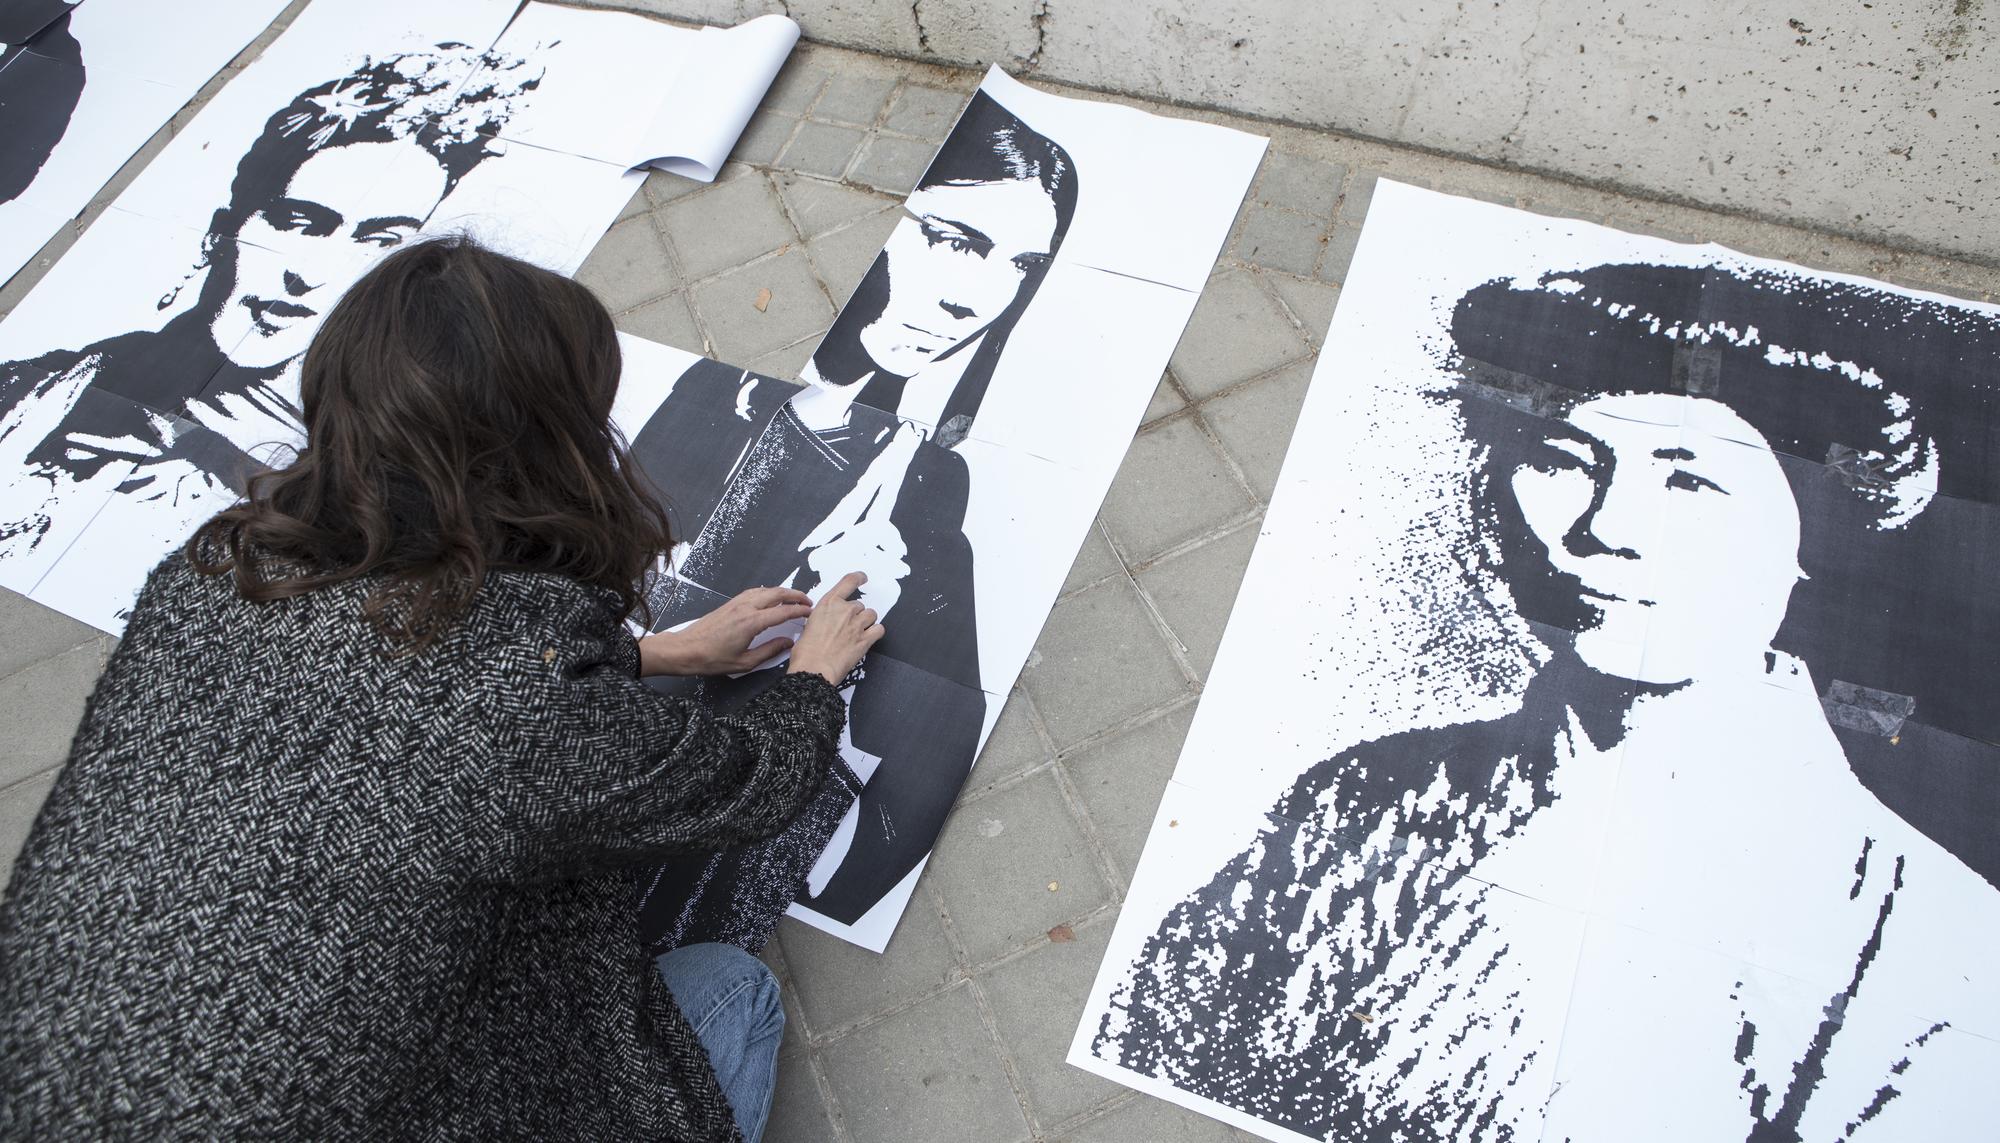 concentración frente al mural feminista vandalizado el 8M en Madrid - 6